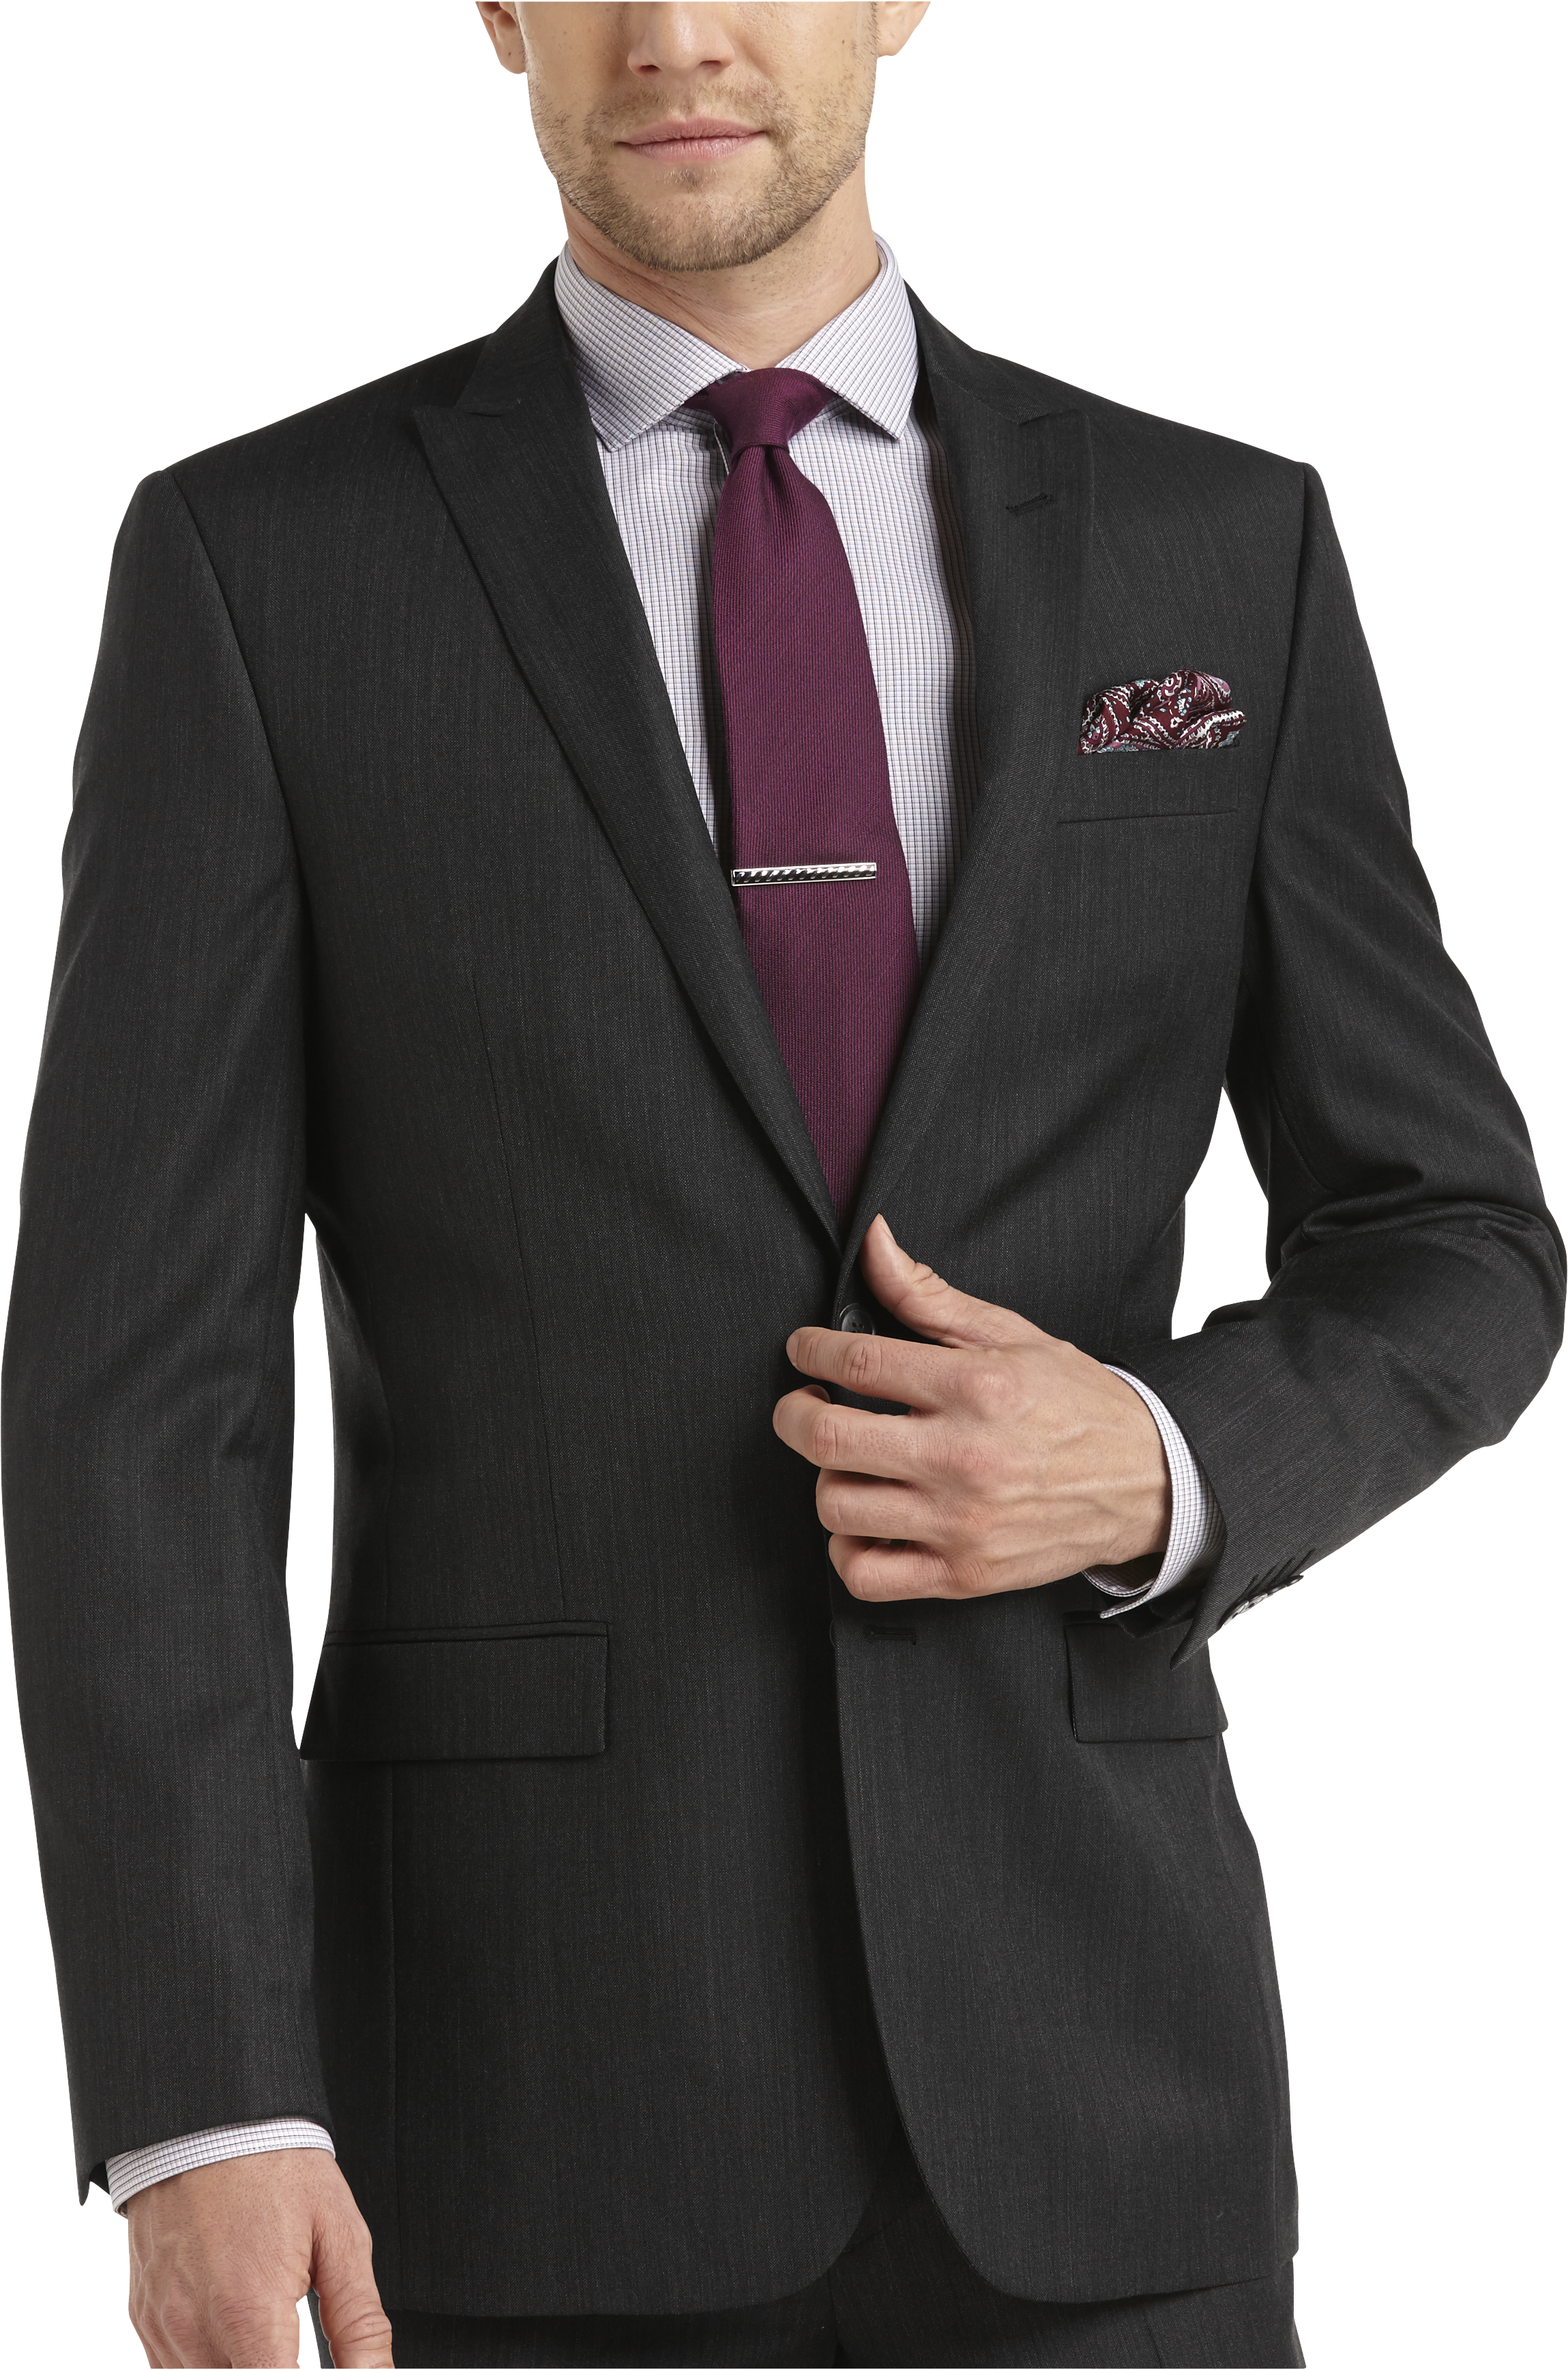 Egara Charcoal Slim Fit Suit - Men's Suits | Men's Wearhouse